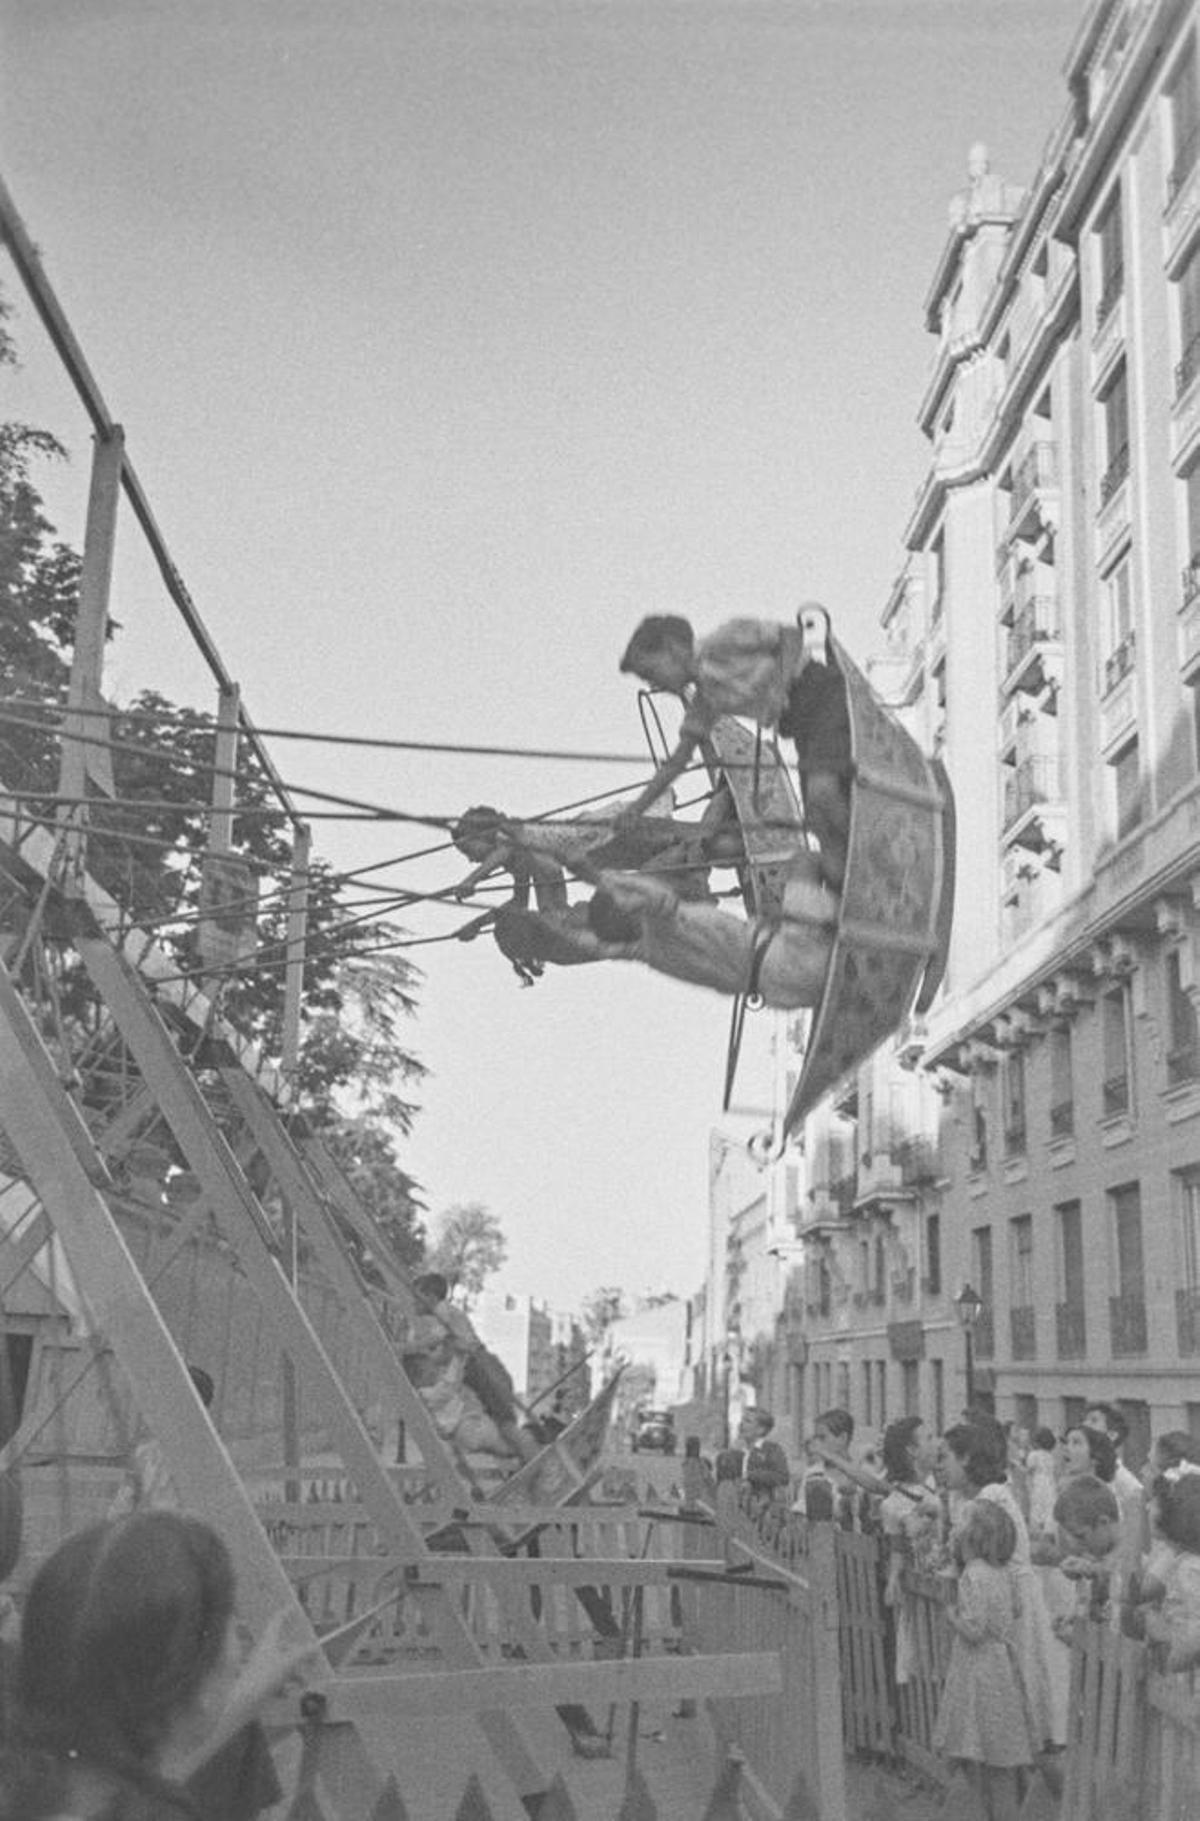 Atracción de feria en una verbena en Chamberí (Madrid) en el verano de 1940, solo un año después del fin de la guerra.